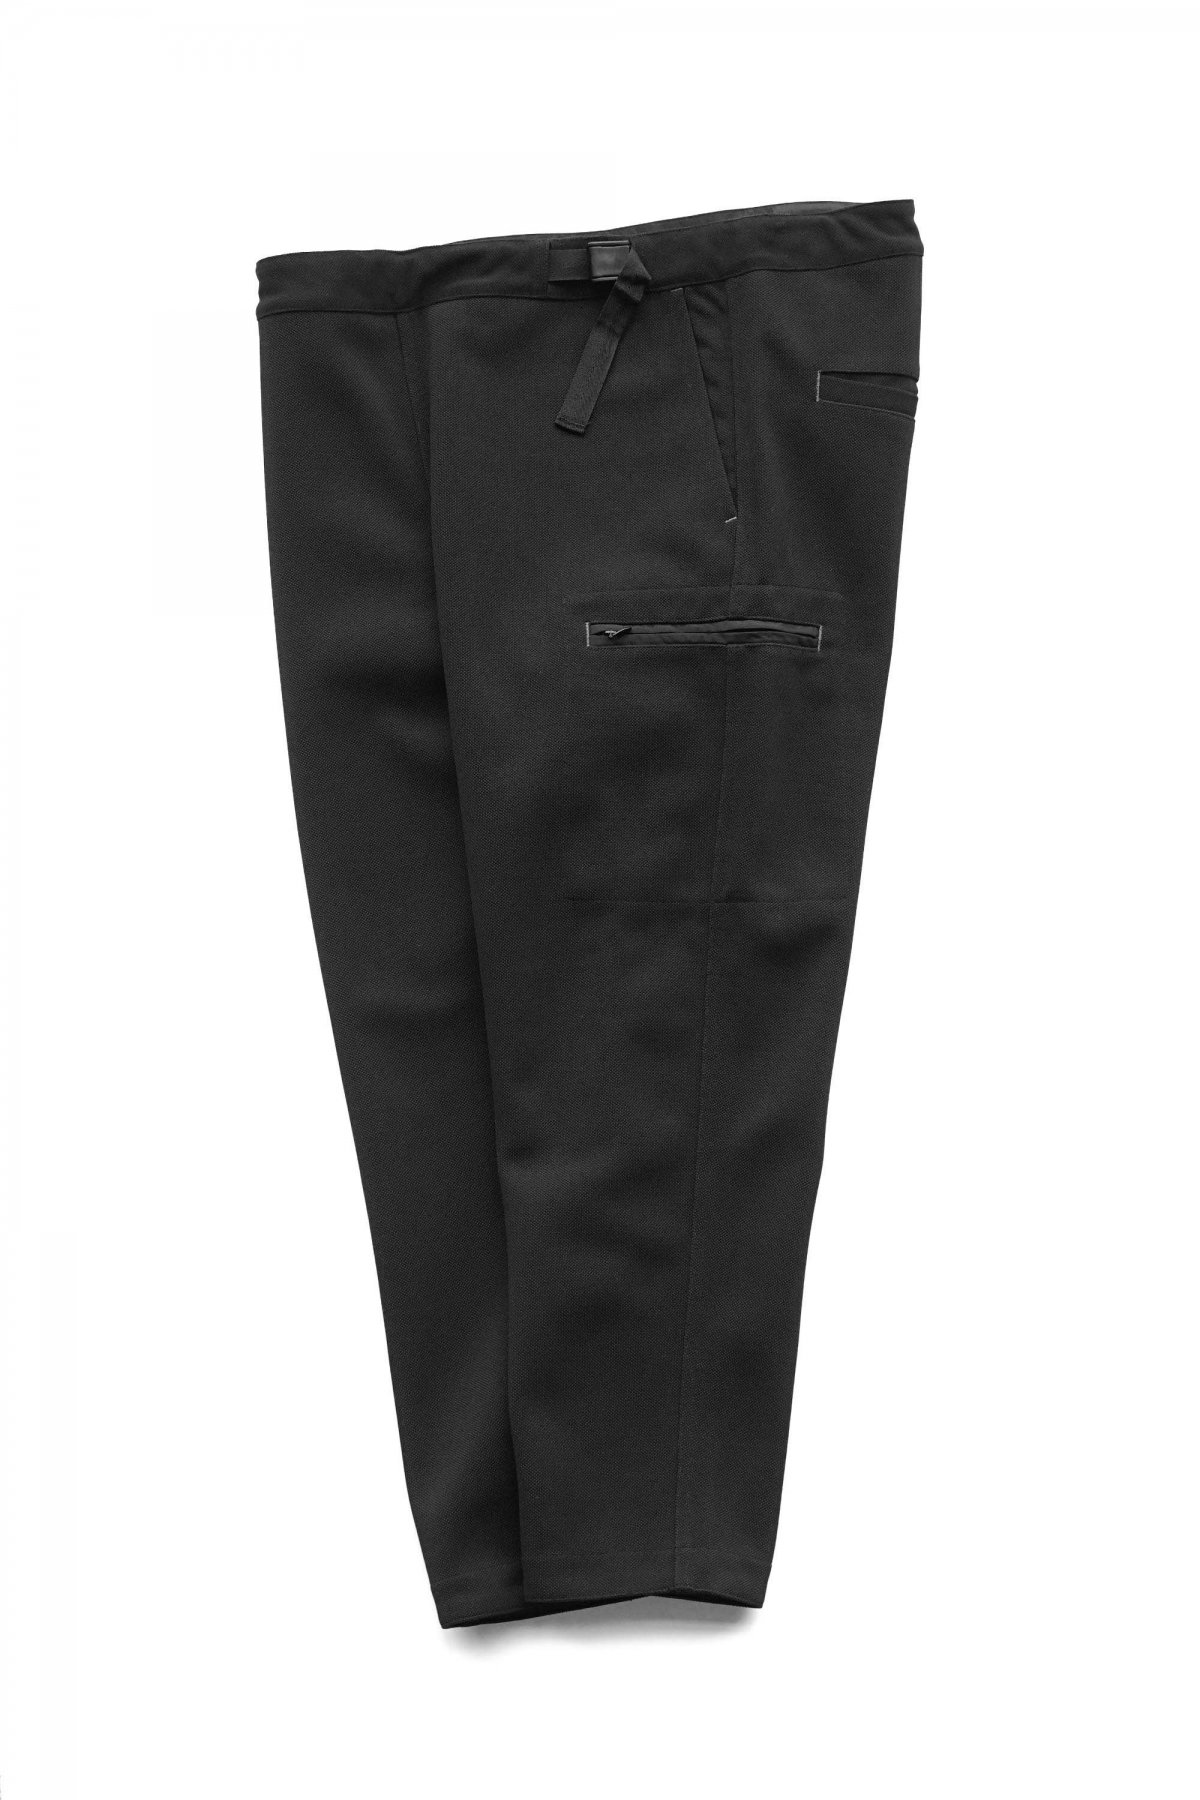 Porter Classic - CORDURA NYLON ZIP PANTS - BLACK ポーター